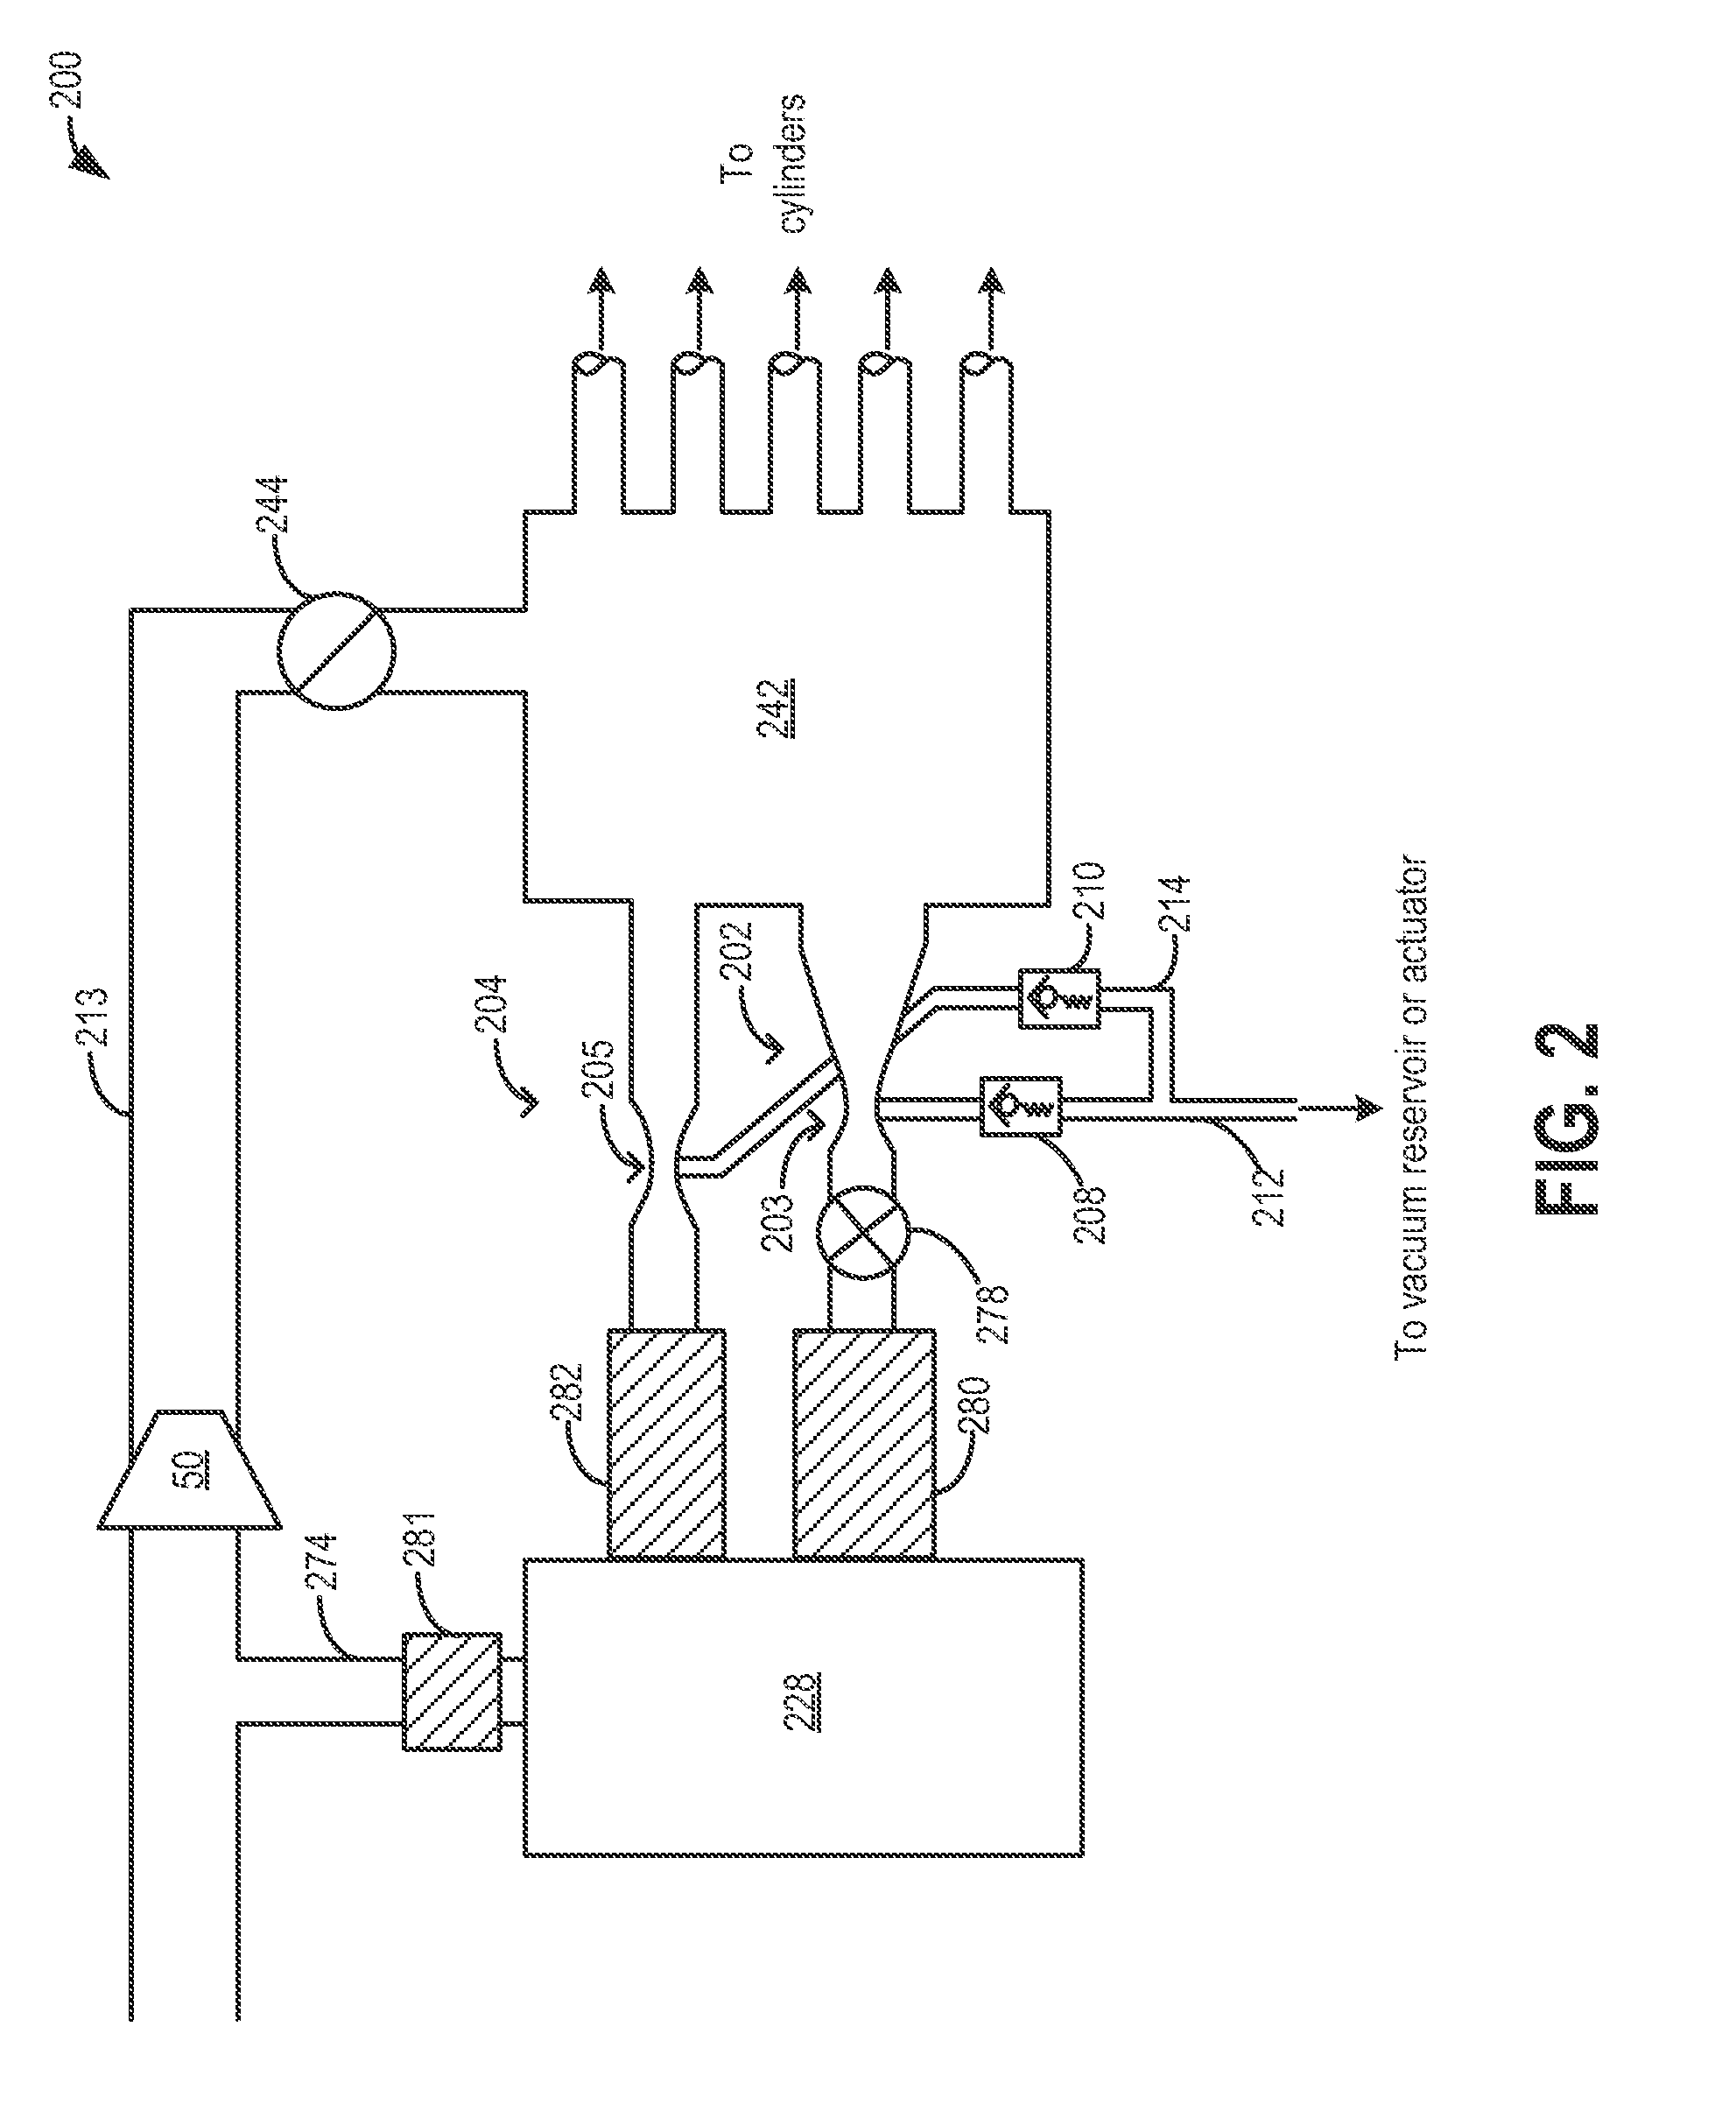 Crankcase ventilation and vacuum generation